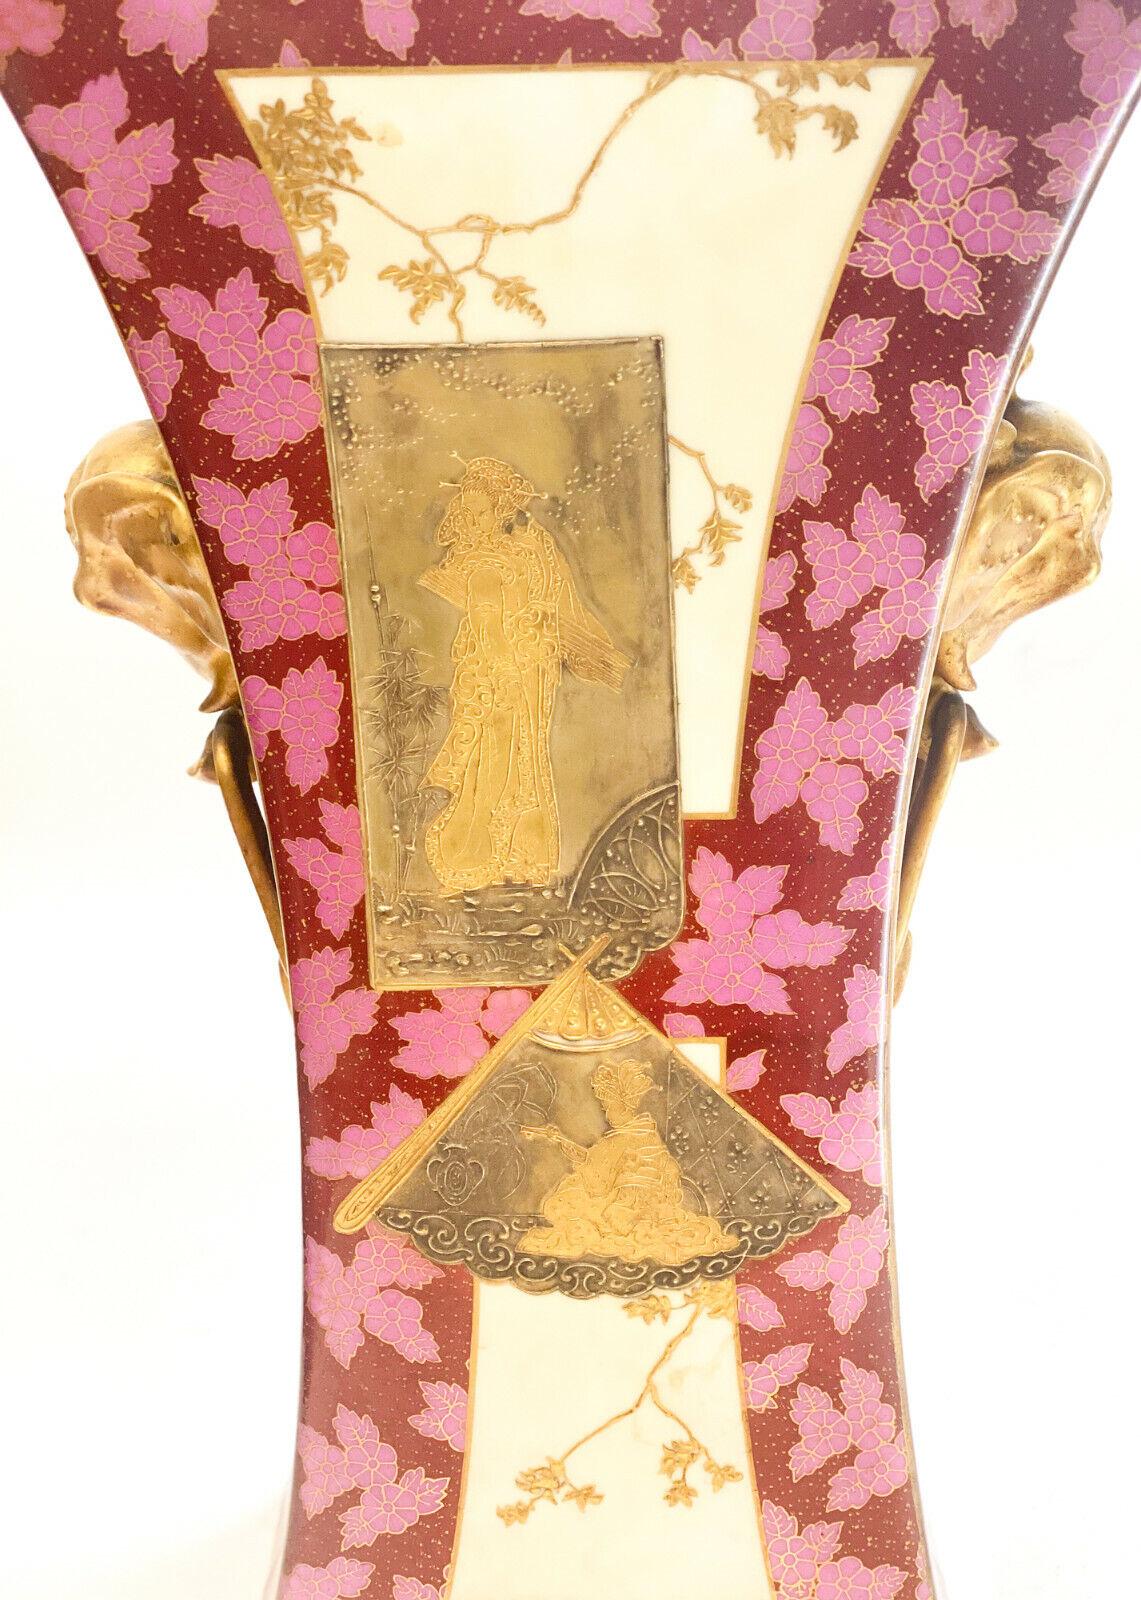 Kontinentale Porzellan Japonismus handbemalt & vergoldet inkrustiert Doppelgriff Vase

Mehrfarbige erhabene goldverzierte japanische Figuren im zentralen Bereich mit Blattakzenten auf rotem und rosa Blumengrund. Figurale vergoldete Elefantenköpfe